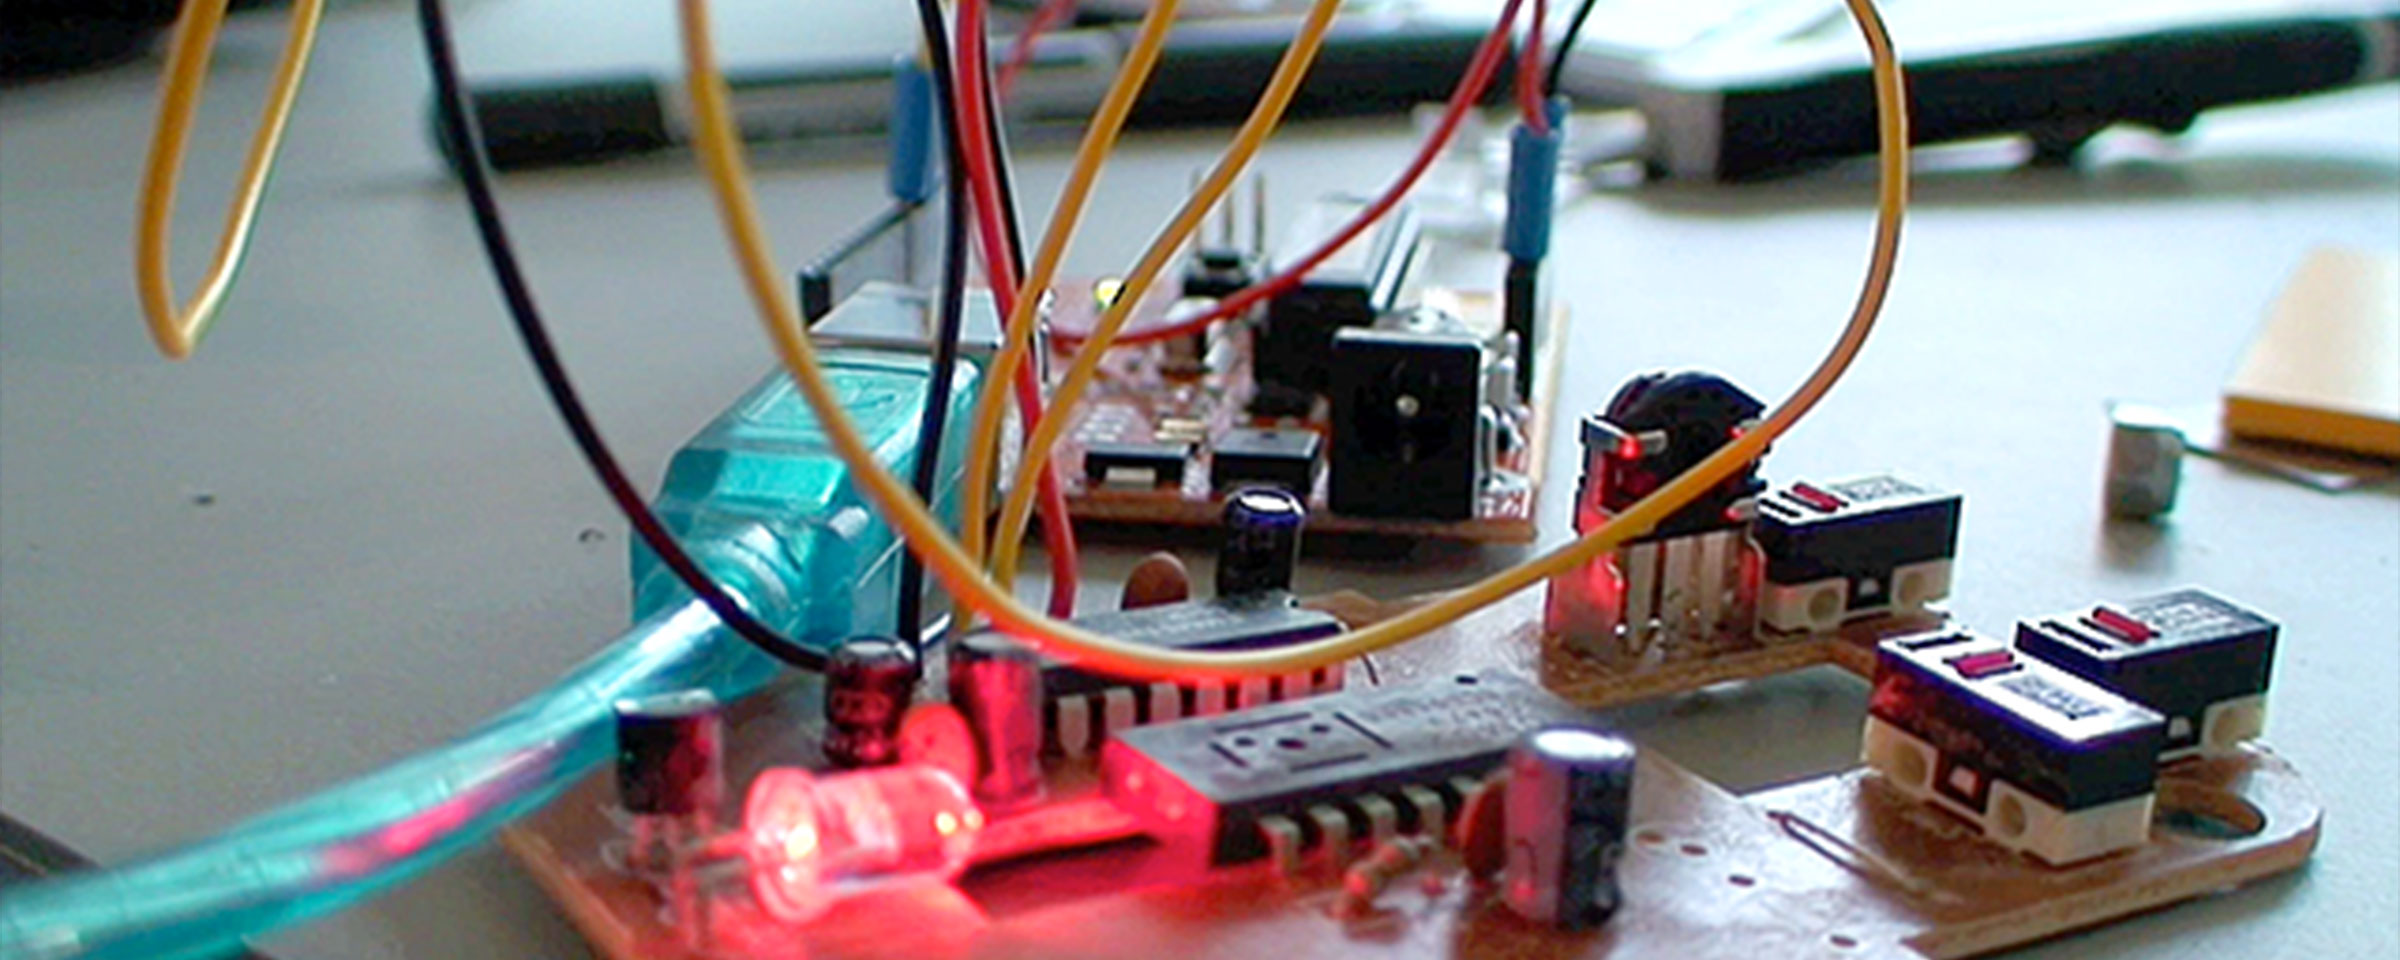 Arduino Computer mit Kabel